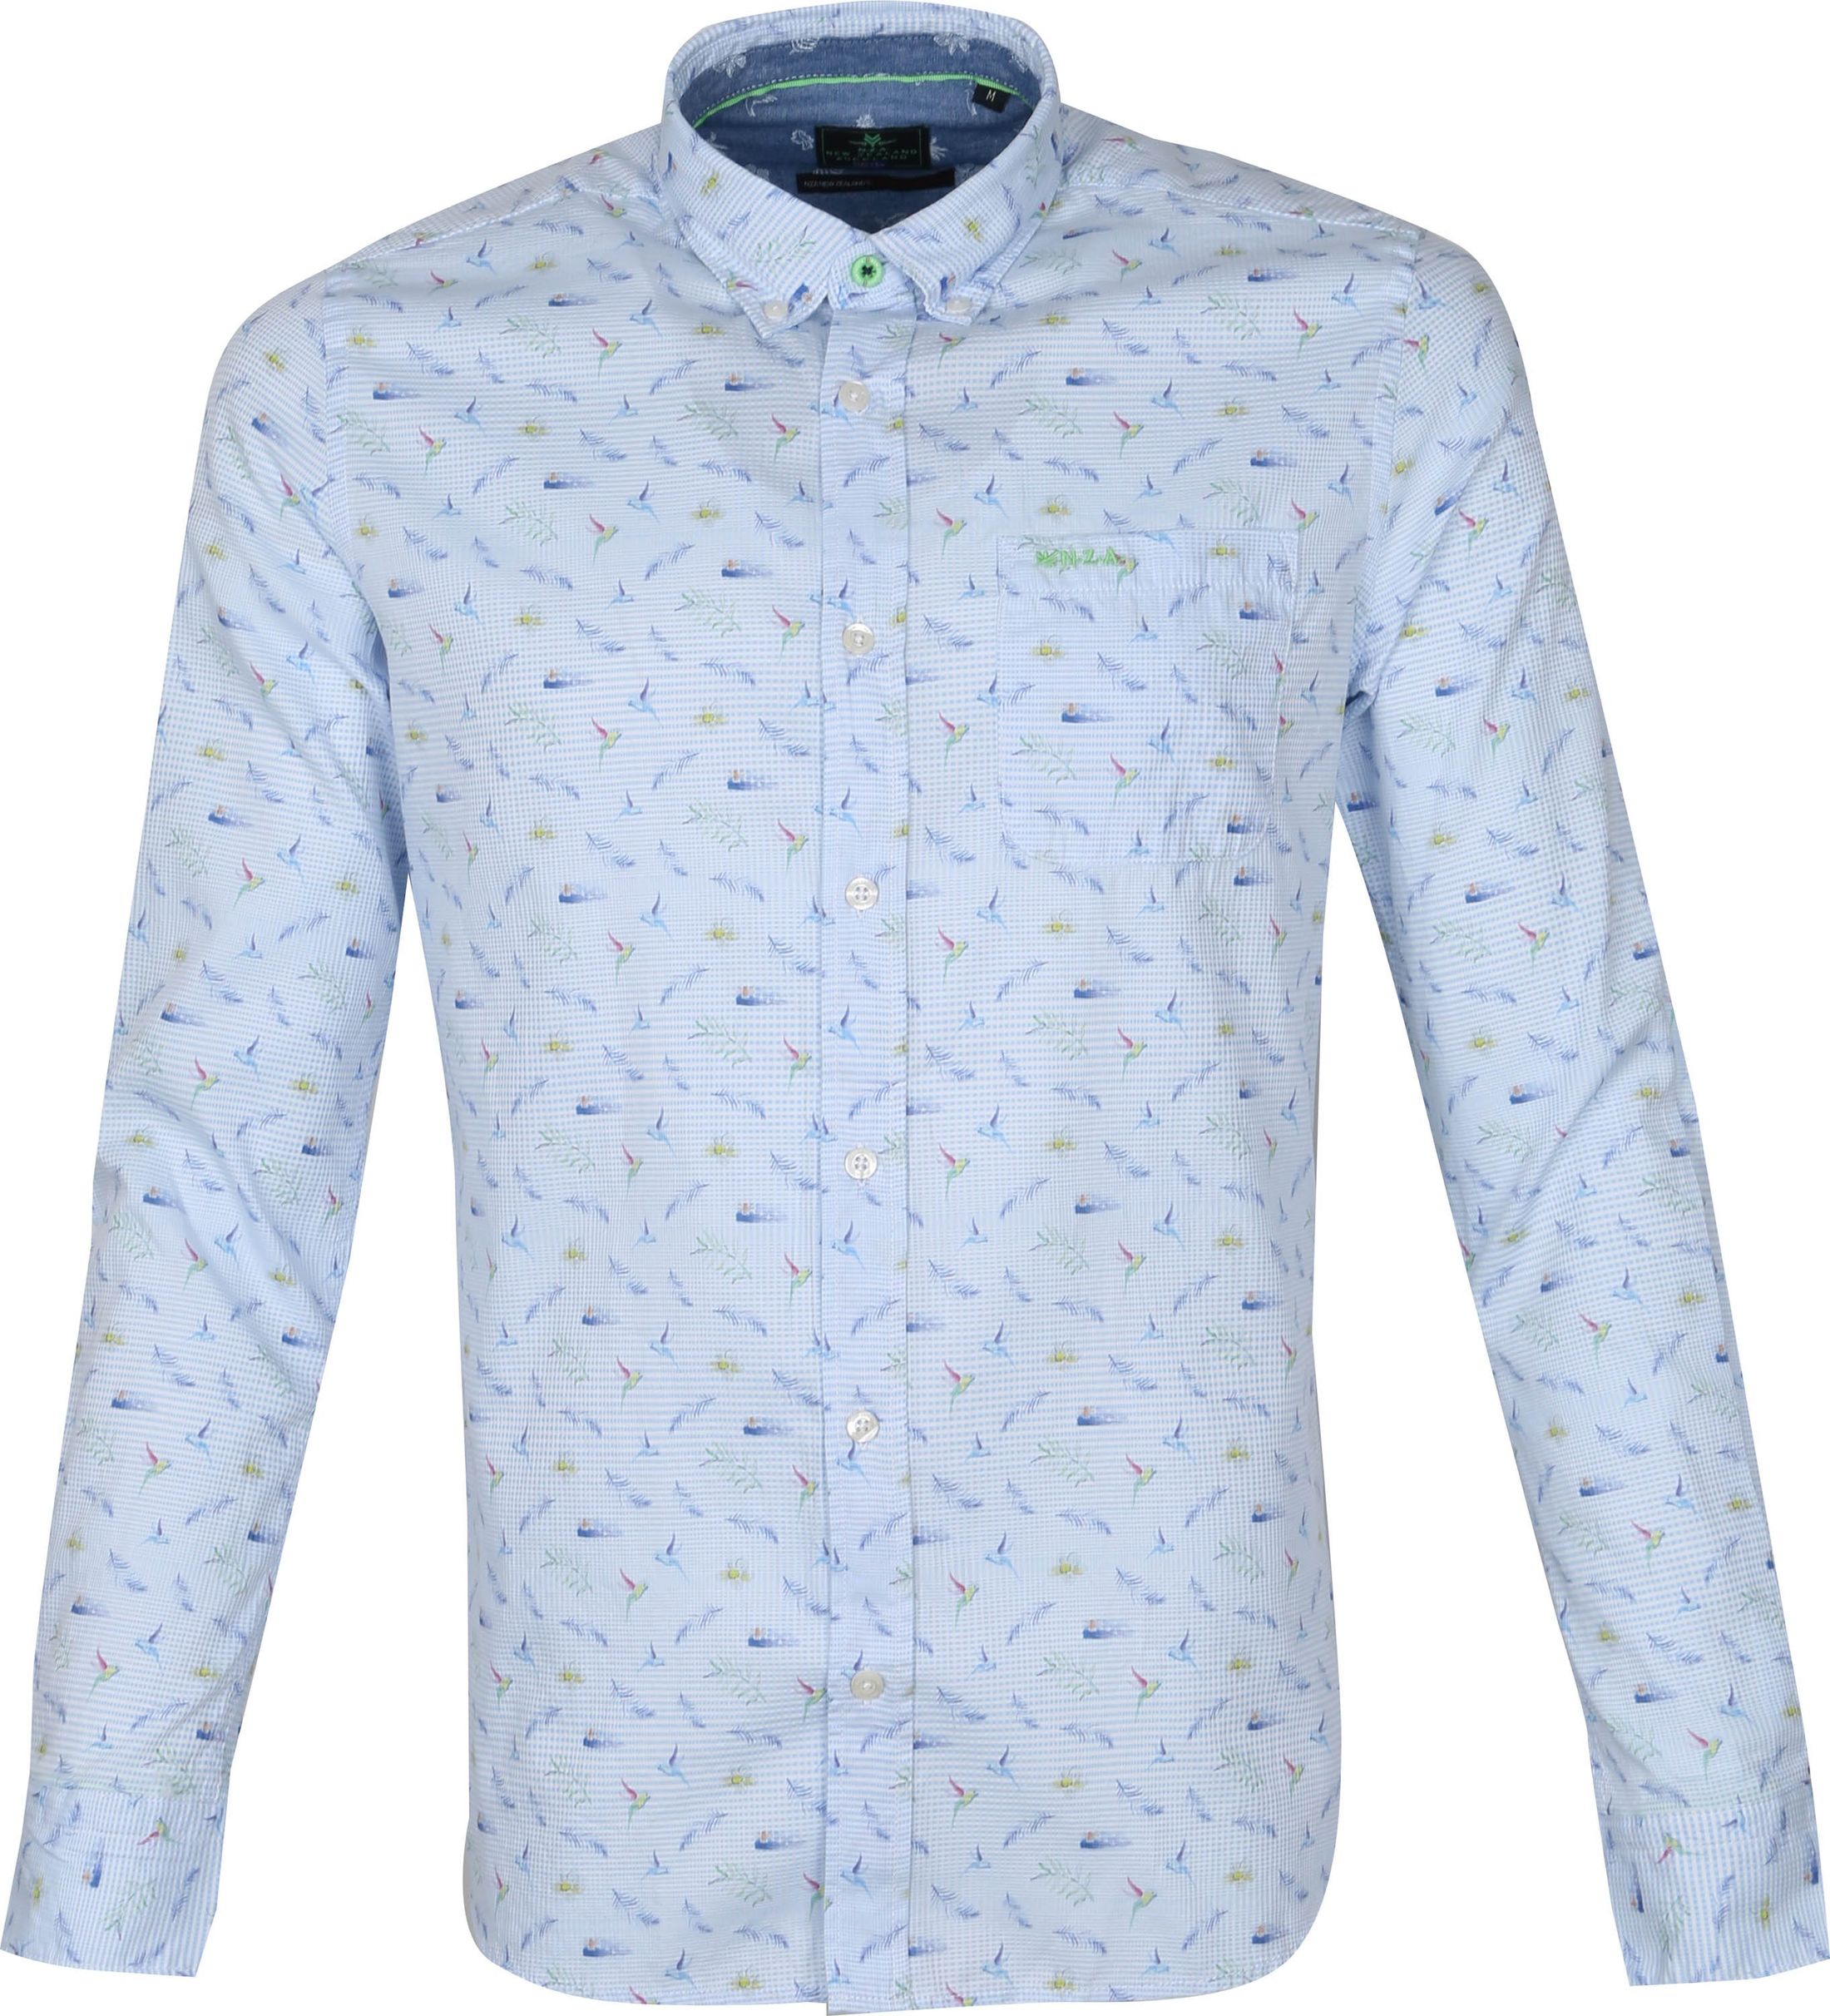 NZA Shirt Malte Brun Light Blue size 3XL